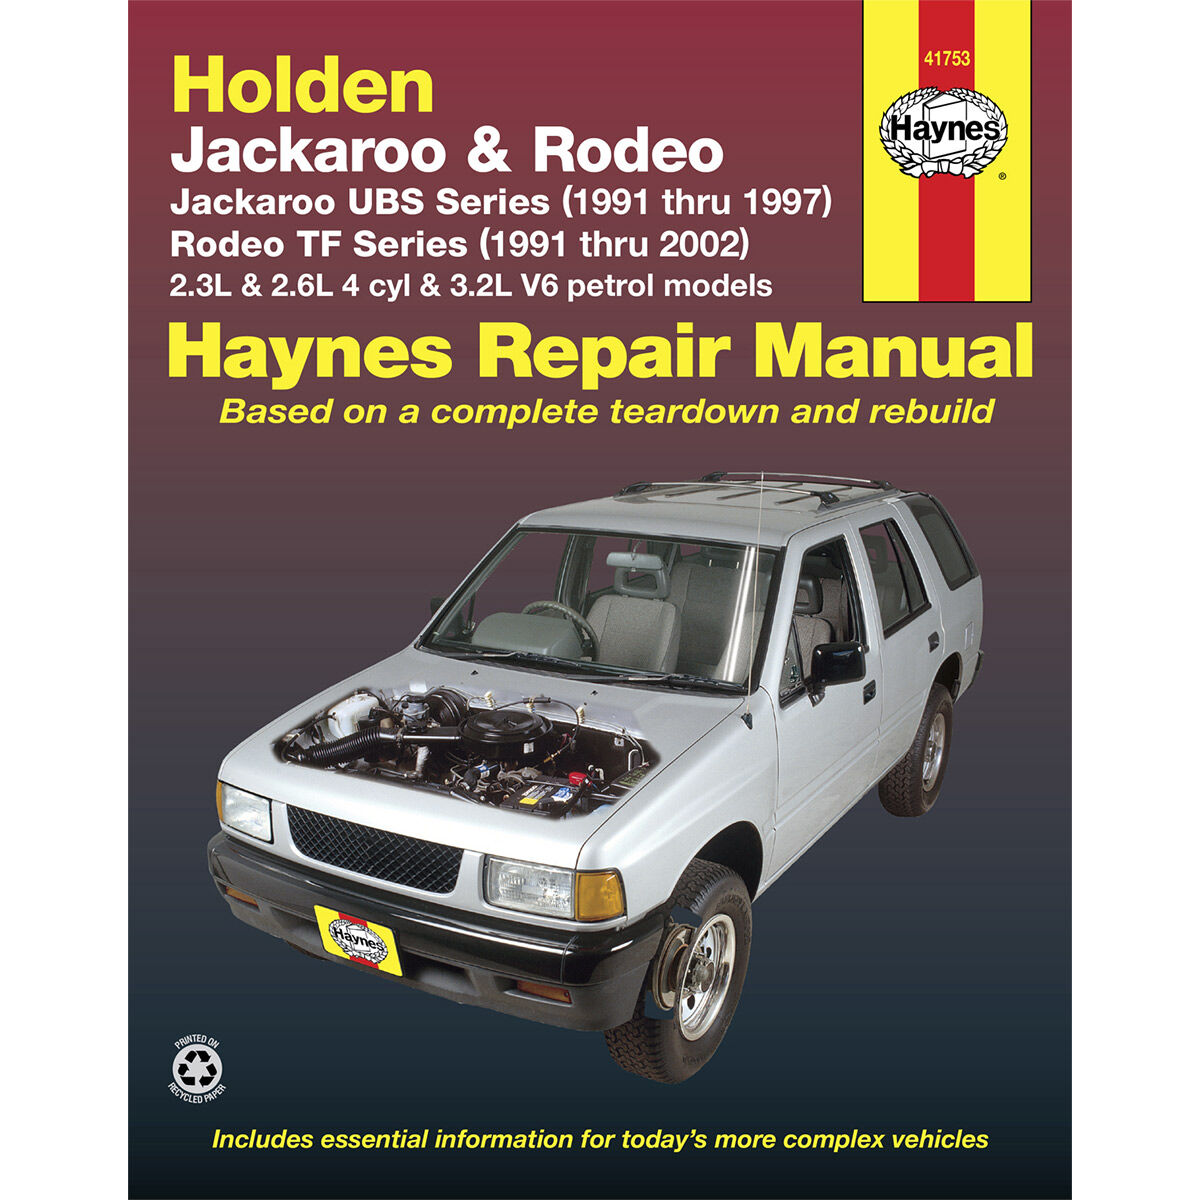 Haynes Car Manual For Holden Jackaroo / Rodeo 1991-2002 - 41753, , scaau_hi-res